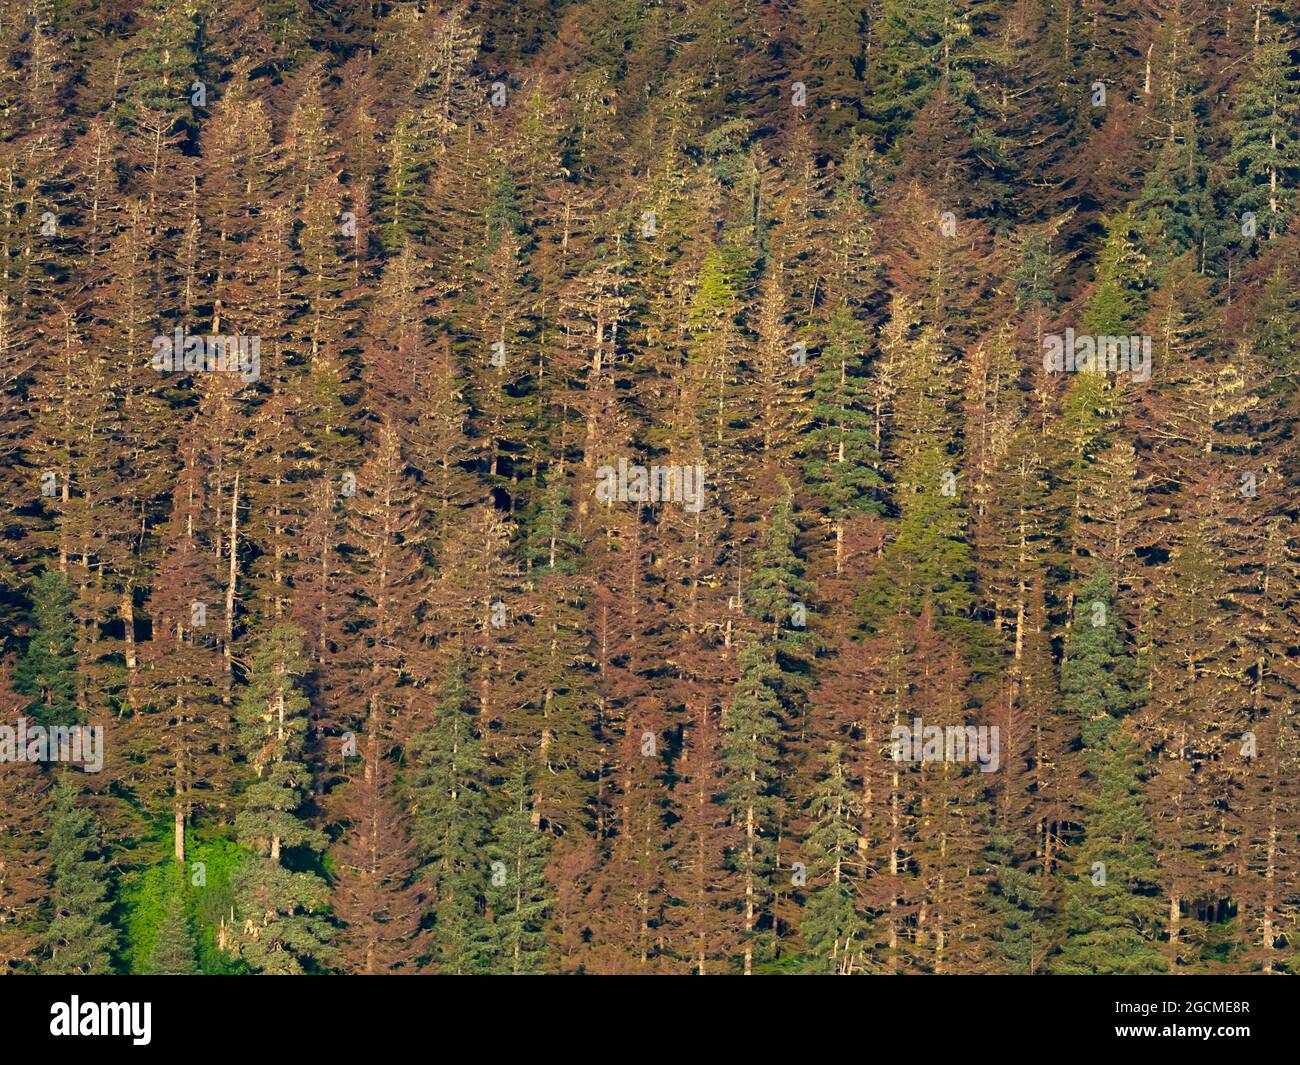 Los árboles de Hemlock del Oeste que mueren de larvas de la mosca del hemlock, Neodiprion tsugae, debido al cambio climático en Tongass National Forest, Southeast, Alaska, USA Foto de stock